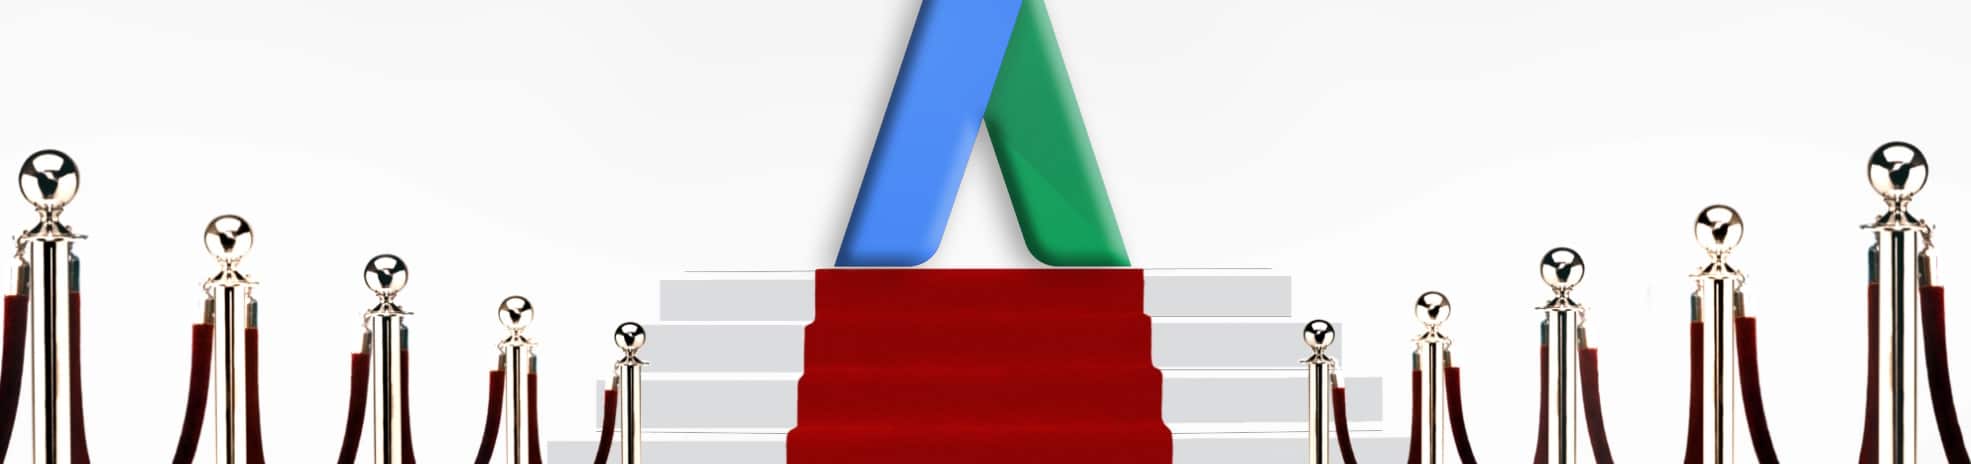 Google AdWords ændrer navn